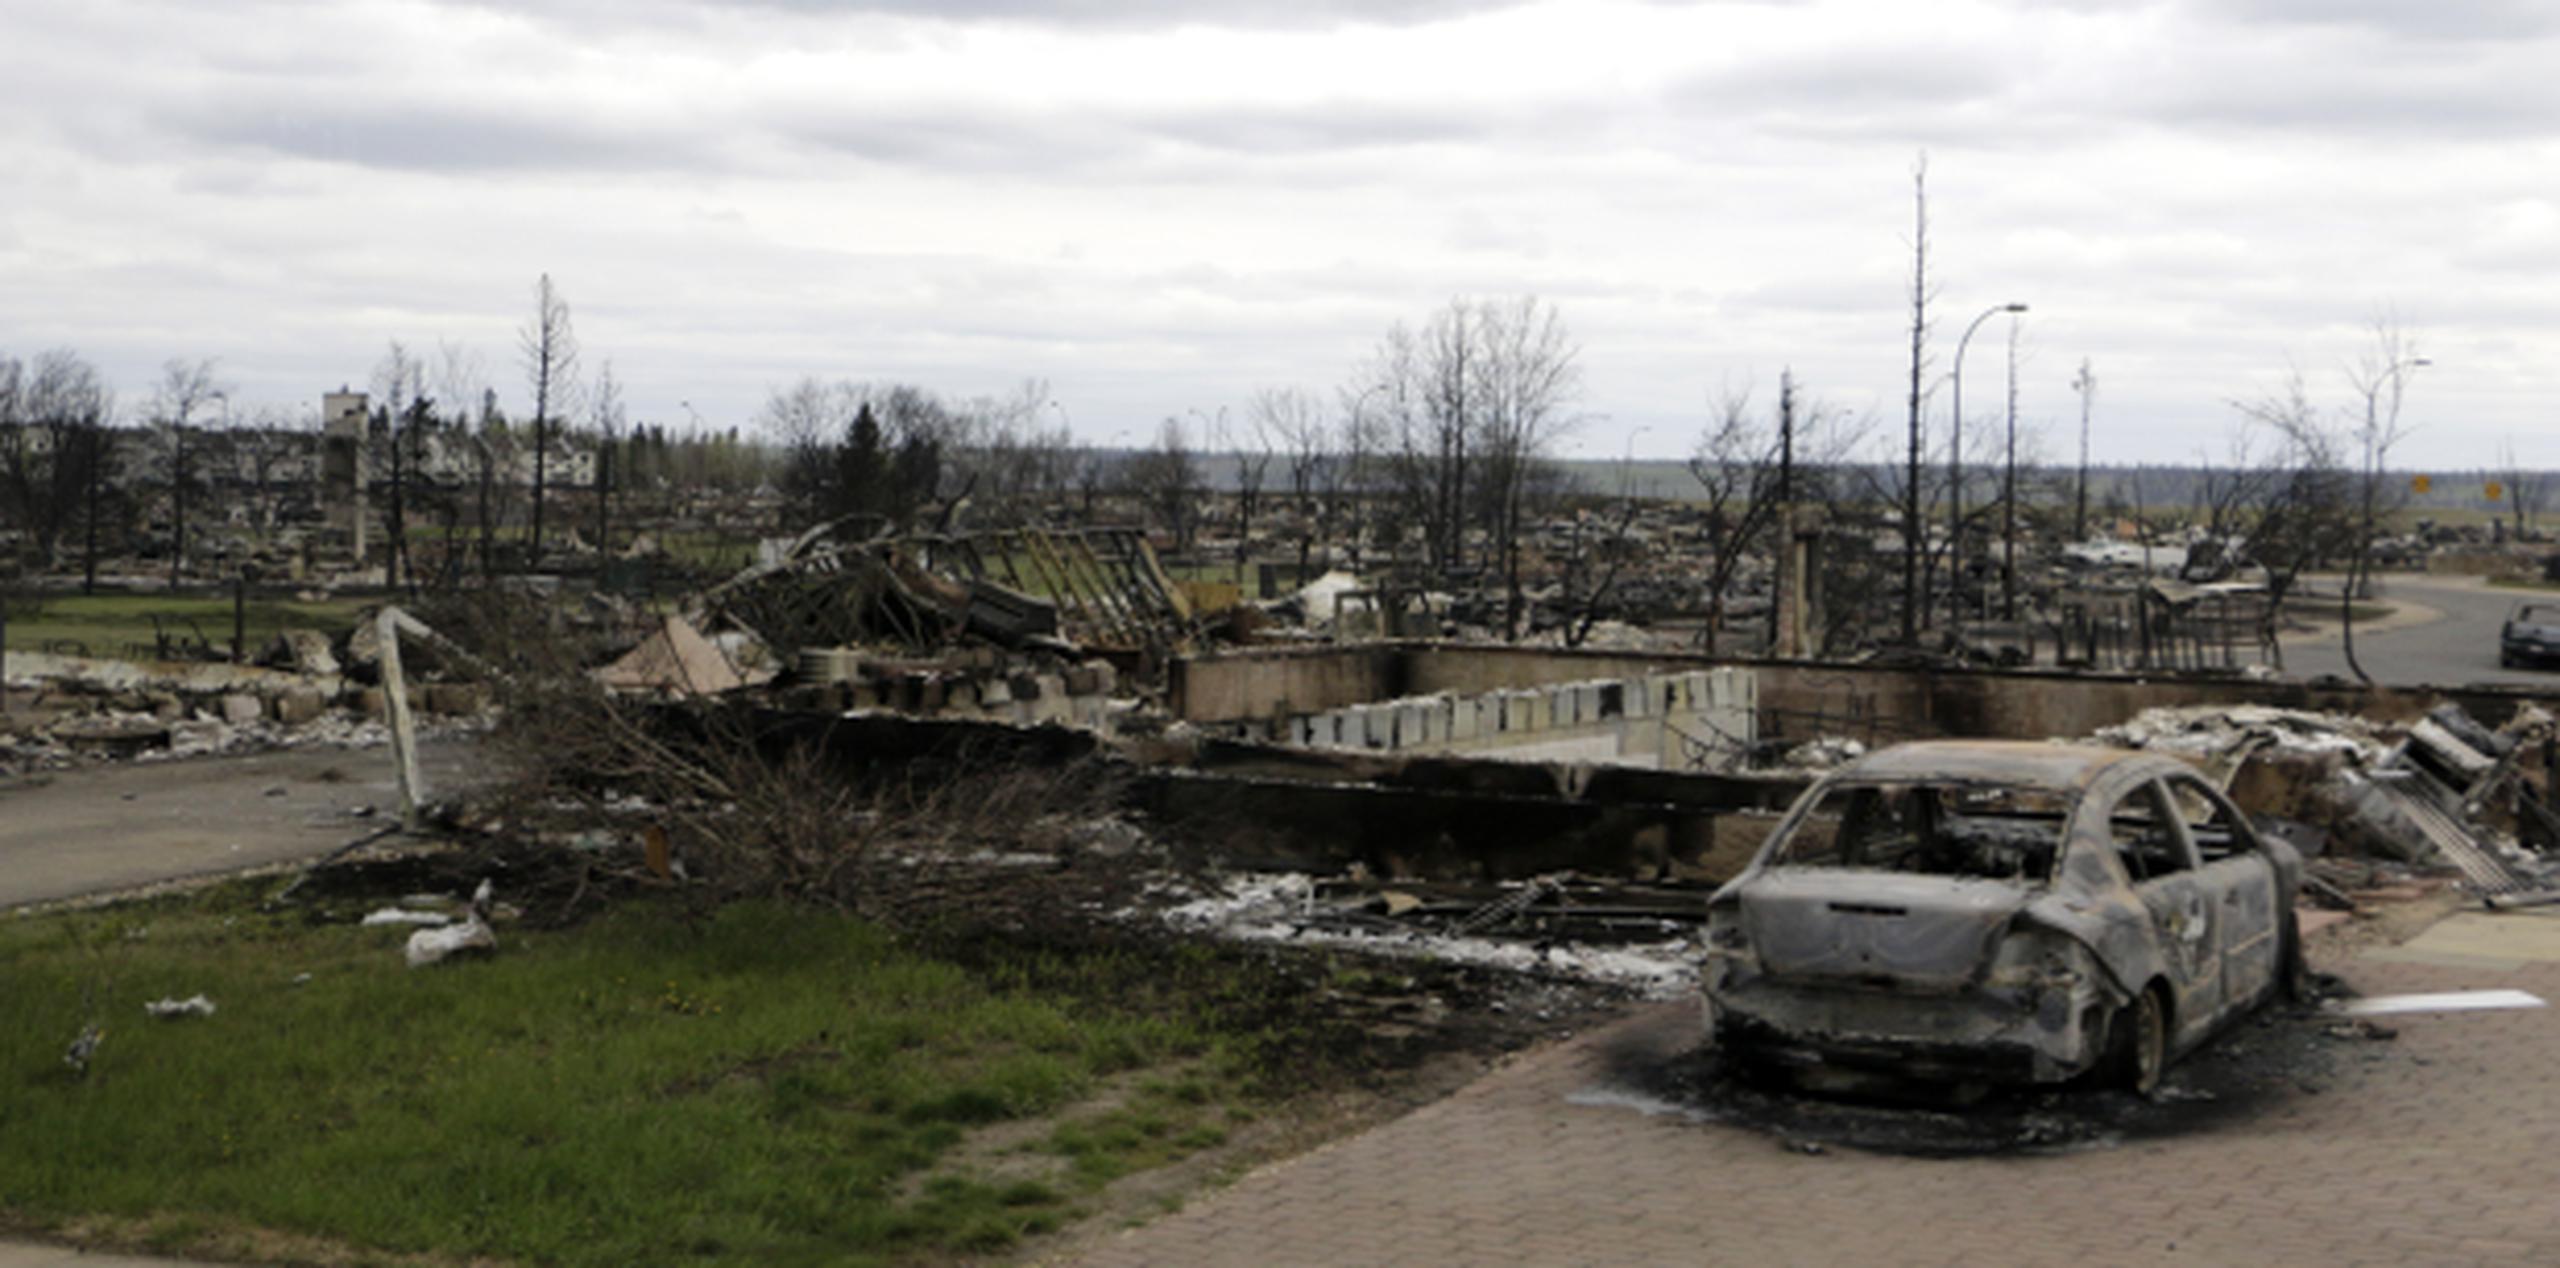 Propiedad destruida en Fort McMurray, Alberta, debido al incendio forestal en Canadá. (AP)